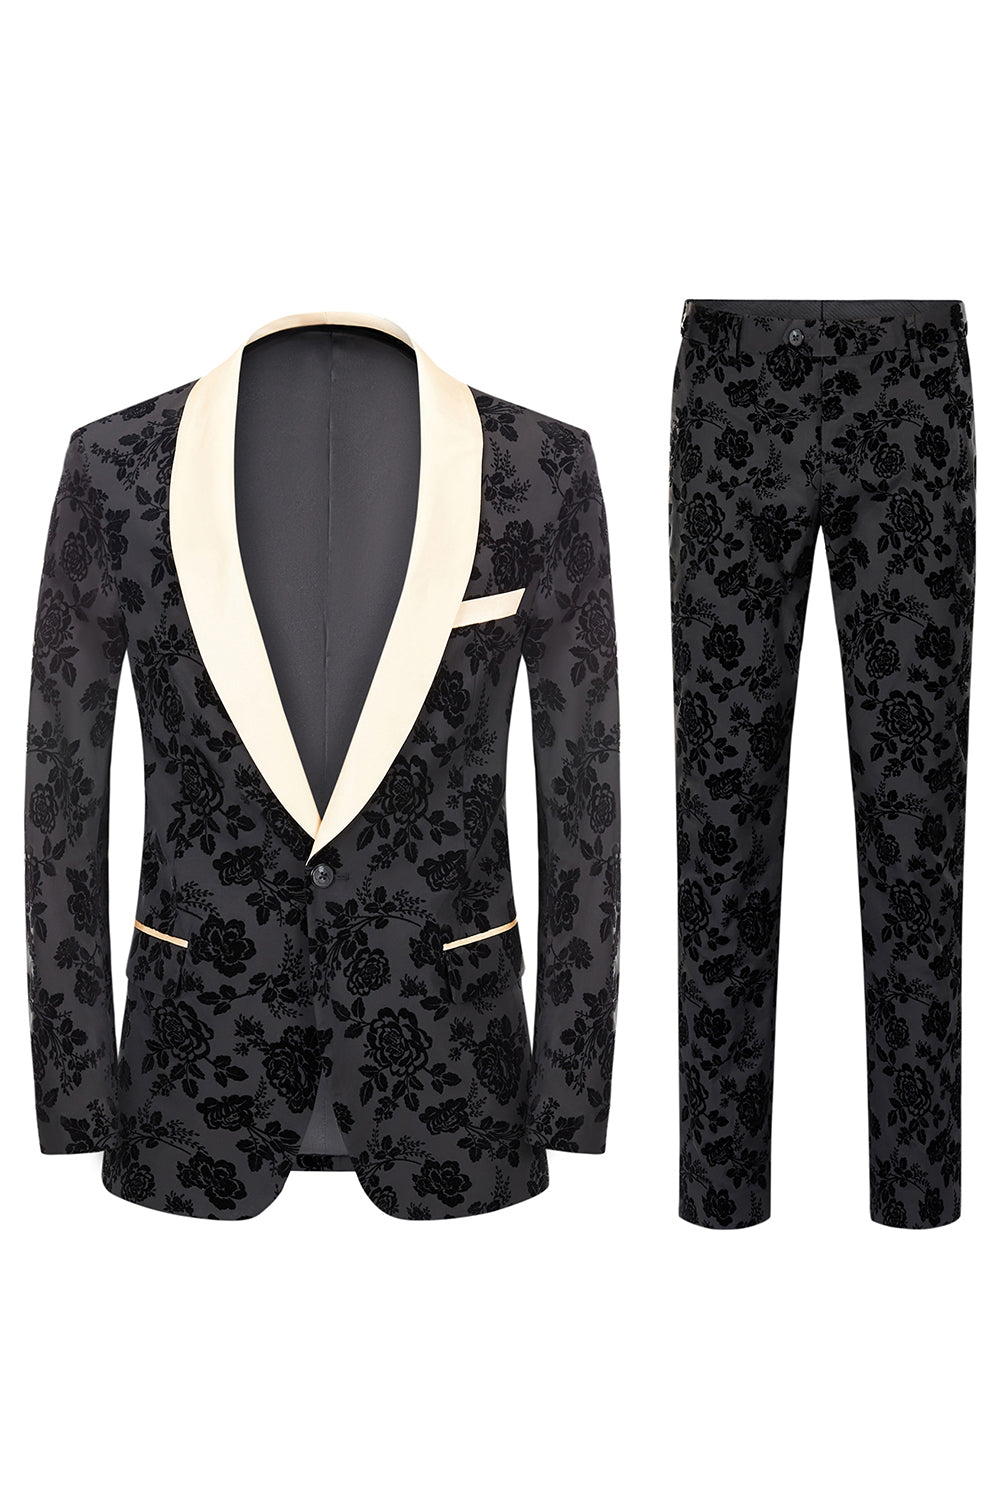 Men's Black Jacquard 3-Piece Shawl Lapel Prom Suits